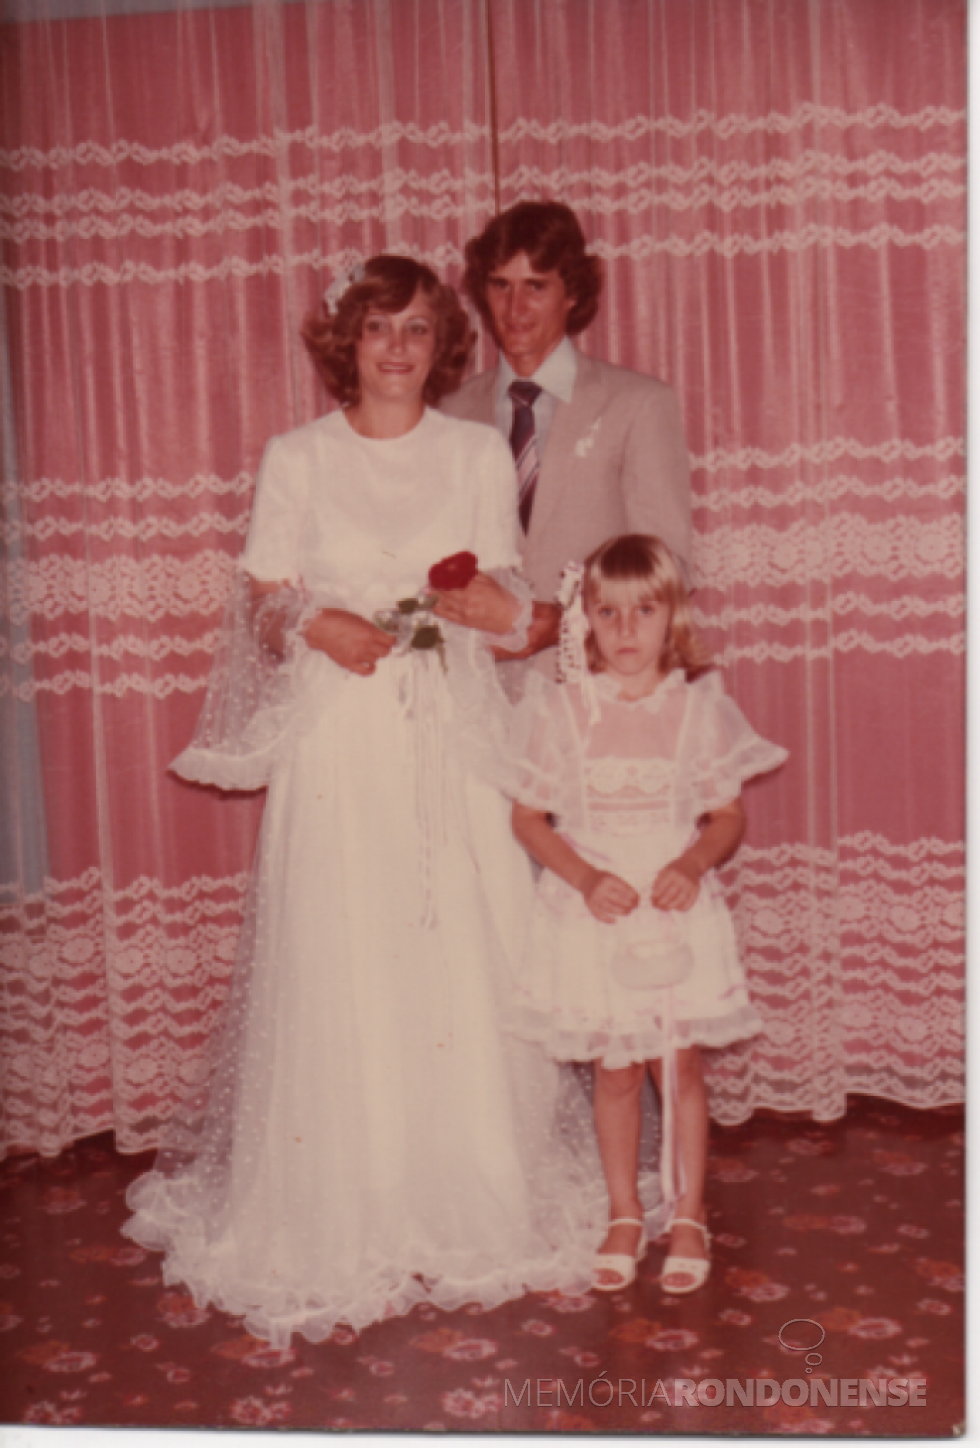 || Jovens rondonenses Telci Viteck e Hildor Dreyer que casaram em janeiro de 1982, na foto junto com a aia Marla Cristiane Viteck, filha do casal Elenita Foppa e Harto Viteck (ele irmão da noiva).
Imagem: Acervo pessoal - FOTO 6 -